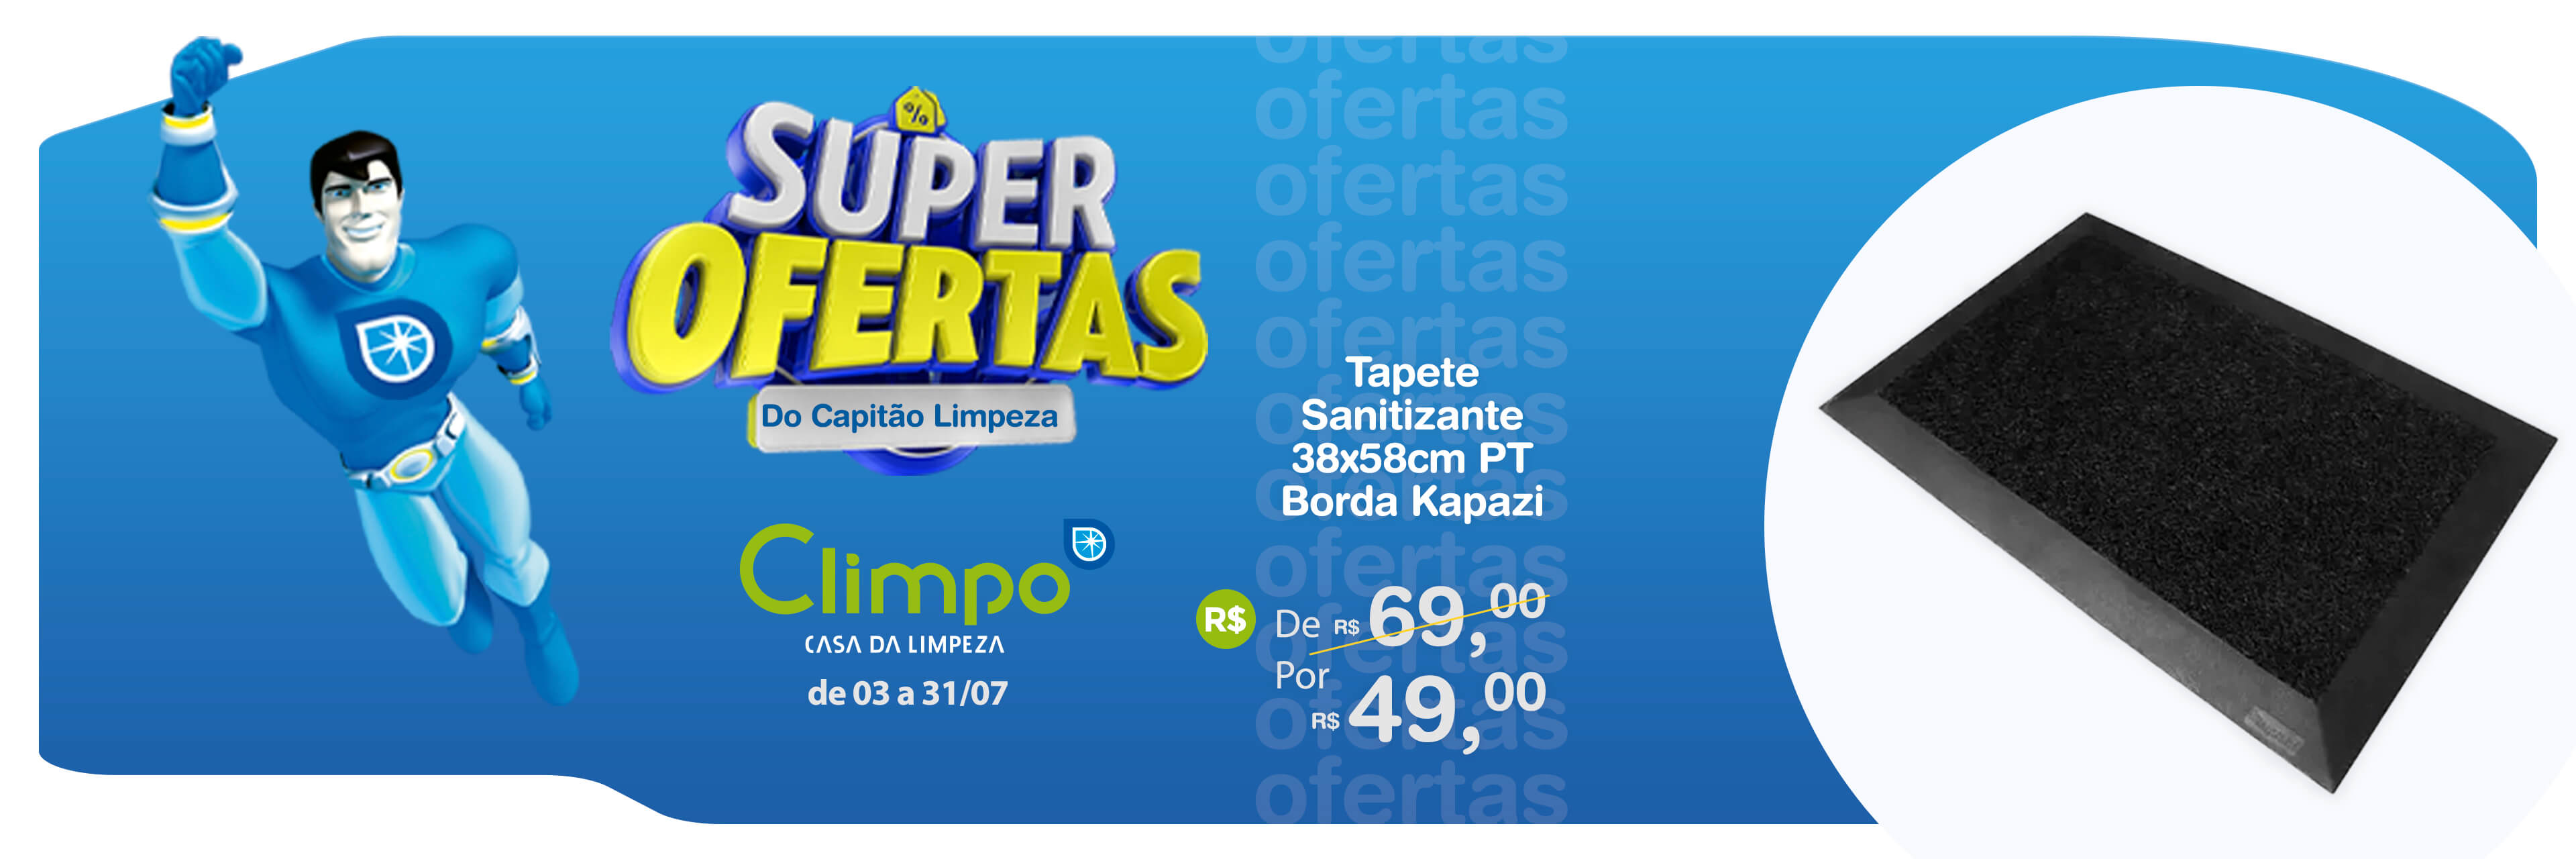 Banner Super Ofertas do Capitão Limpeza Tapete Sanitizante 04